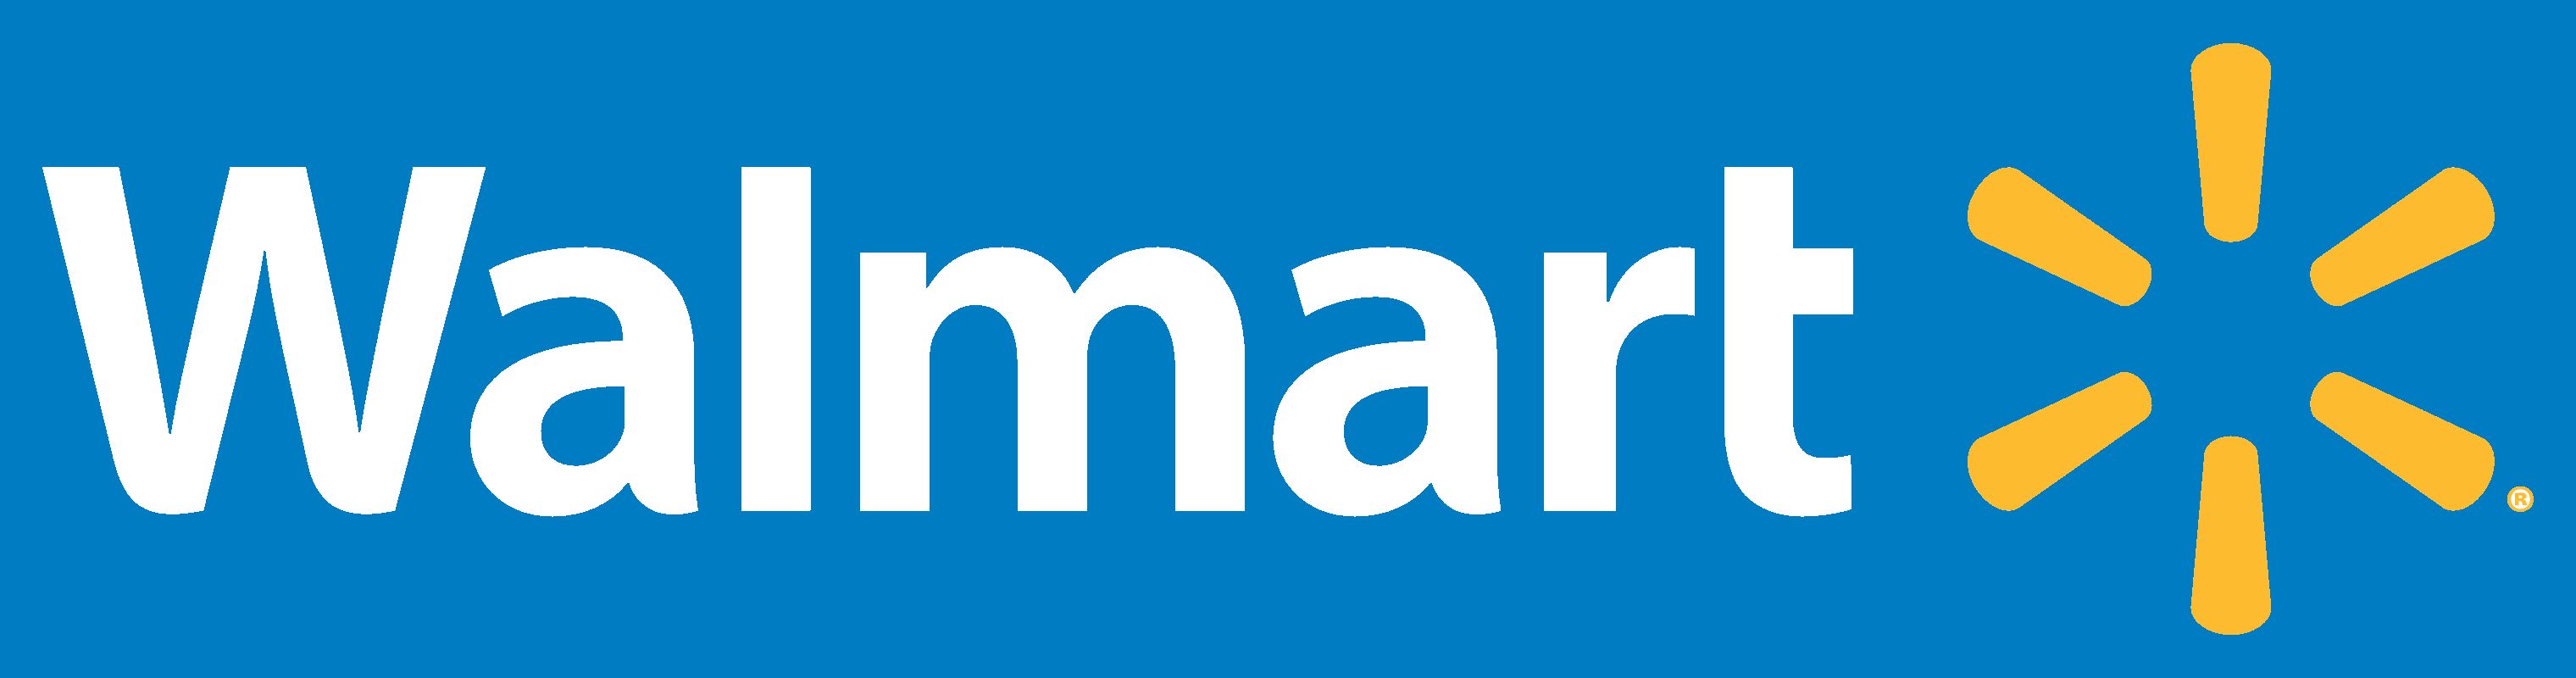 沃尔玛logo分析图片